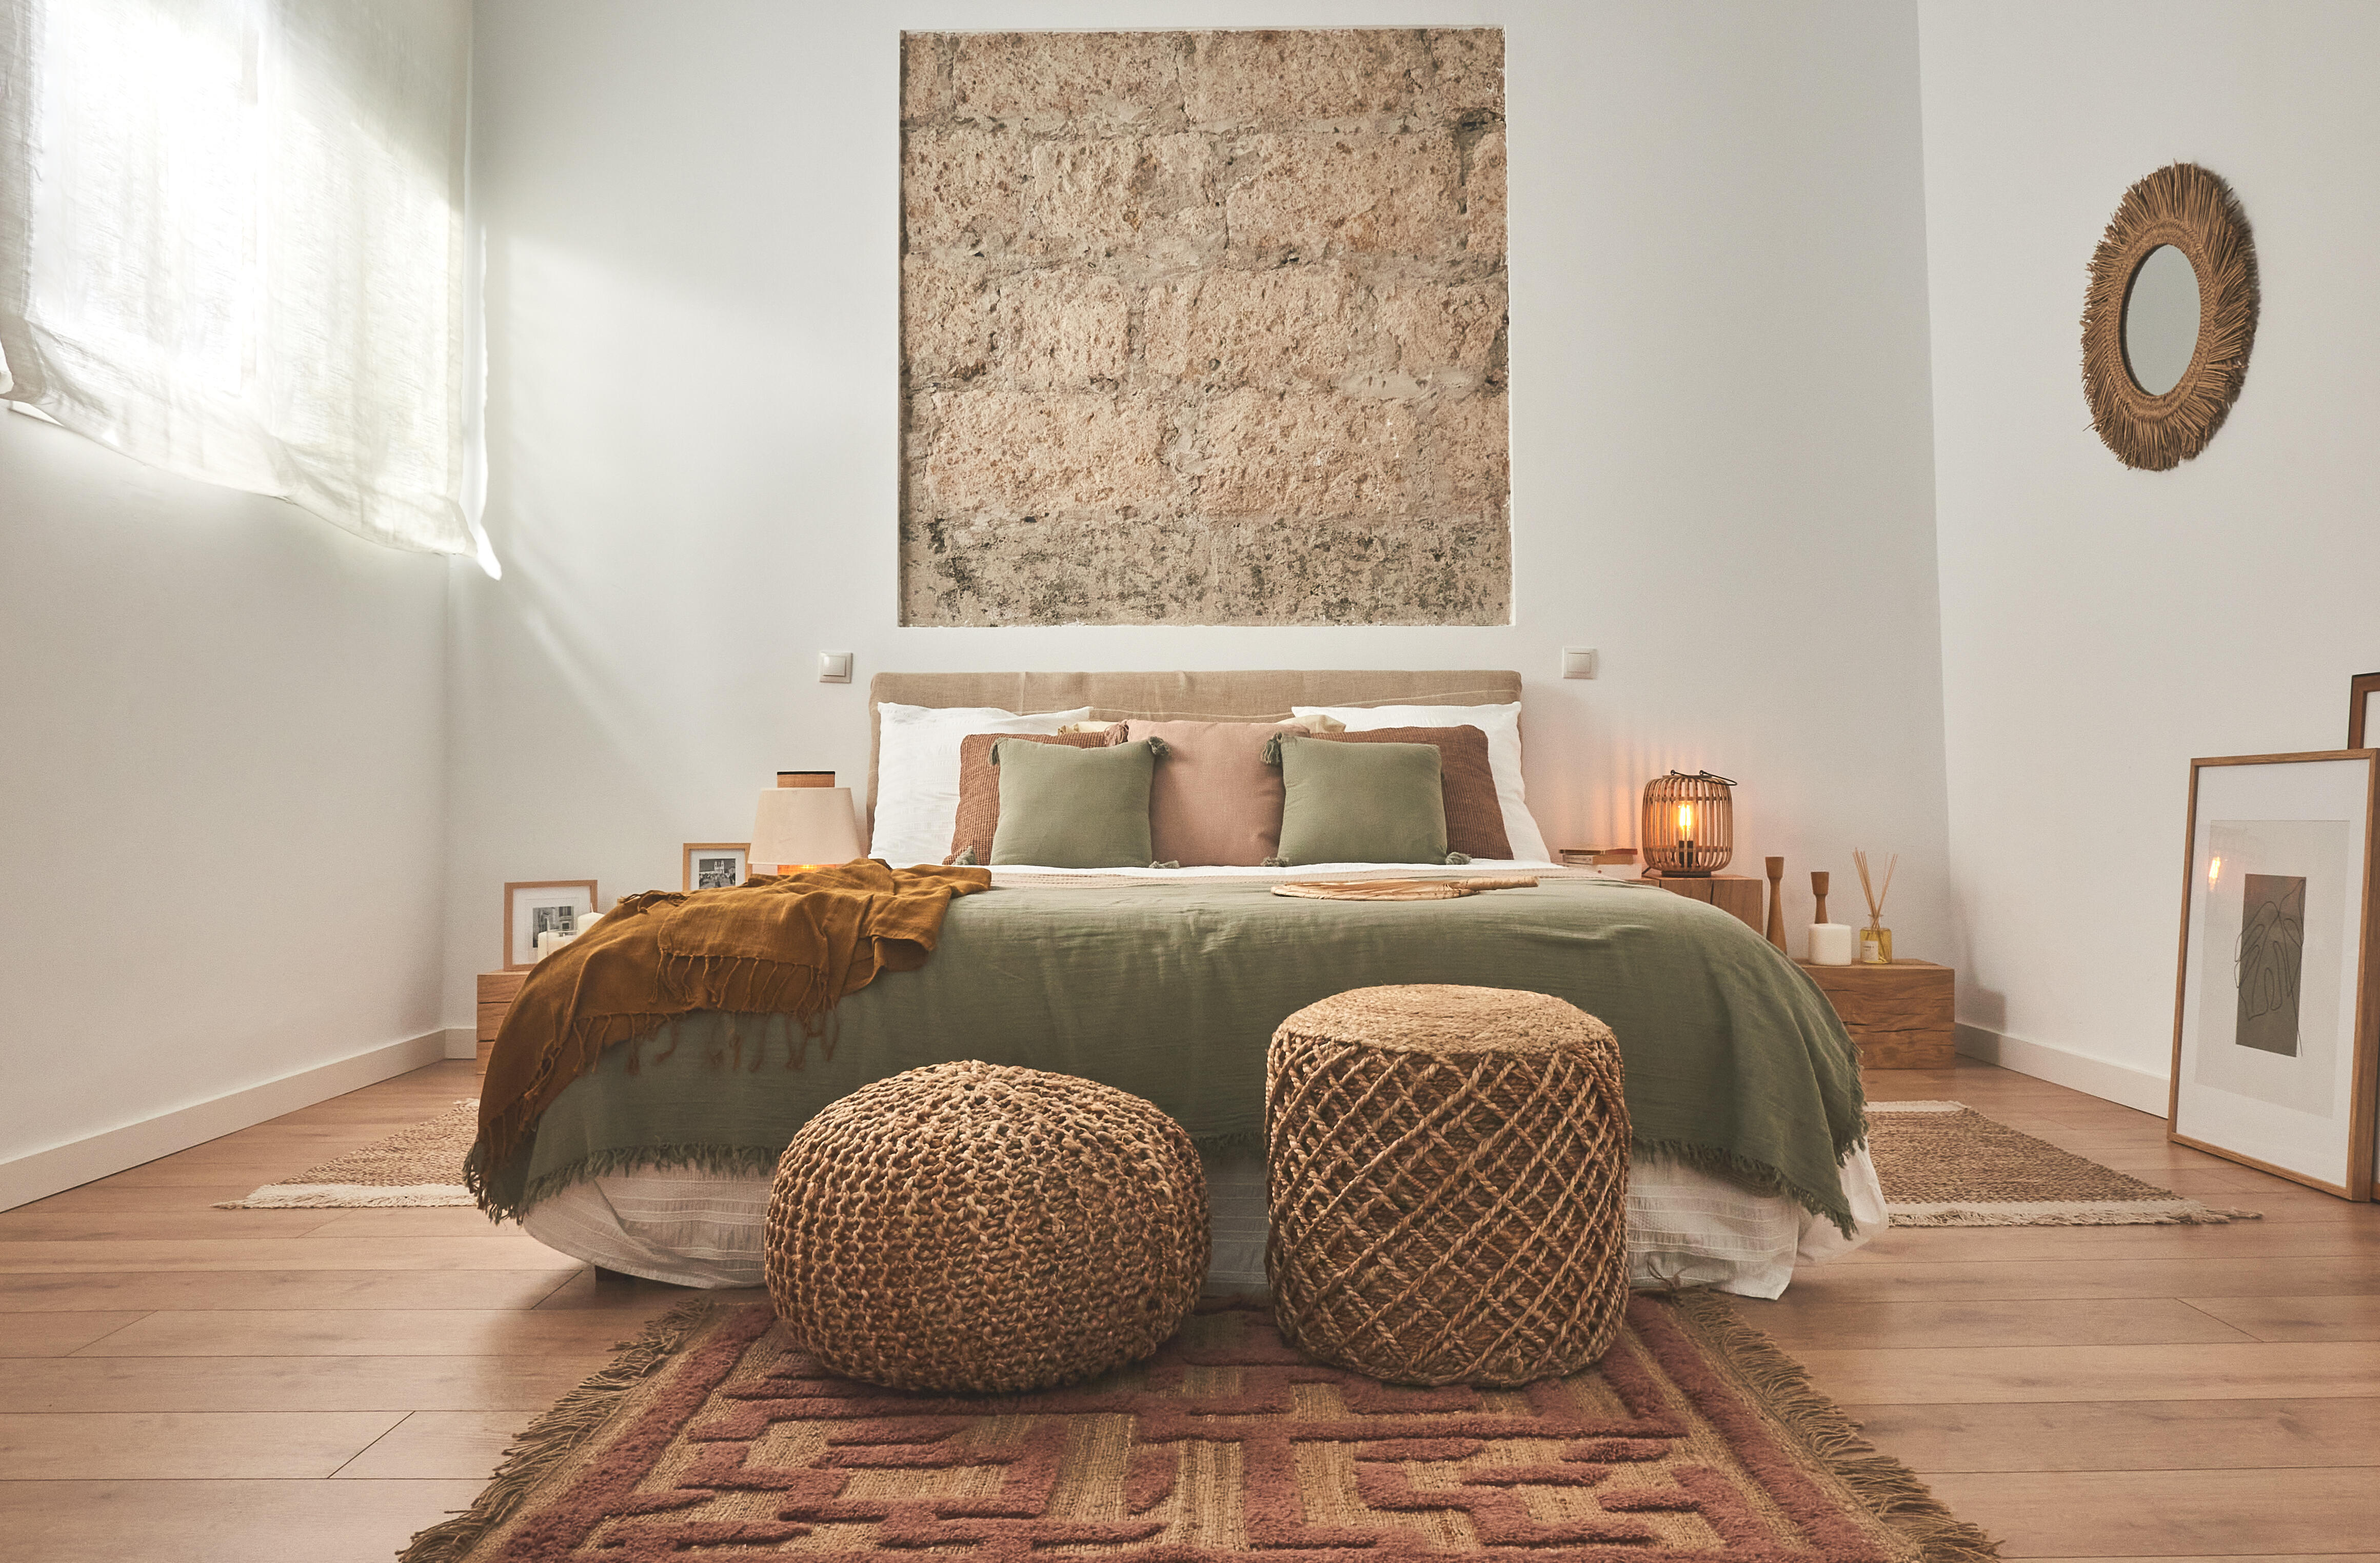 ▷ La nueva tendencia: Decorar dormitorios con piedra natural - Tilesonline